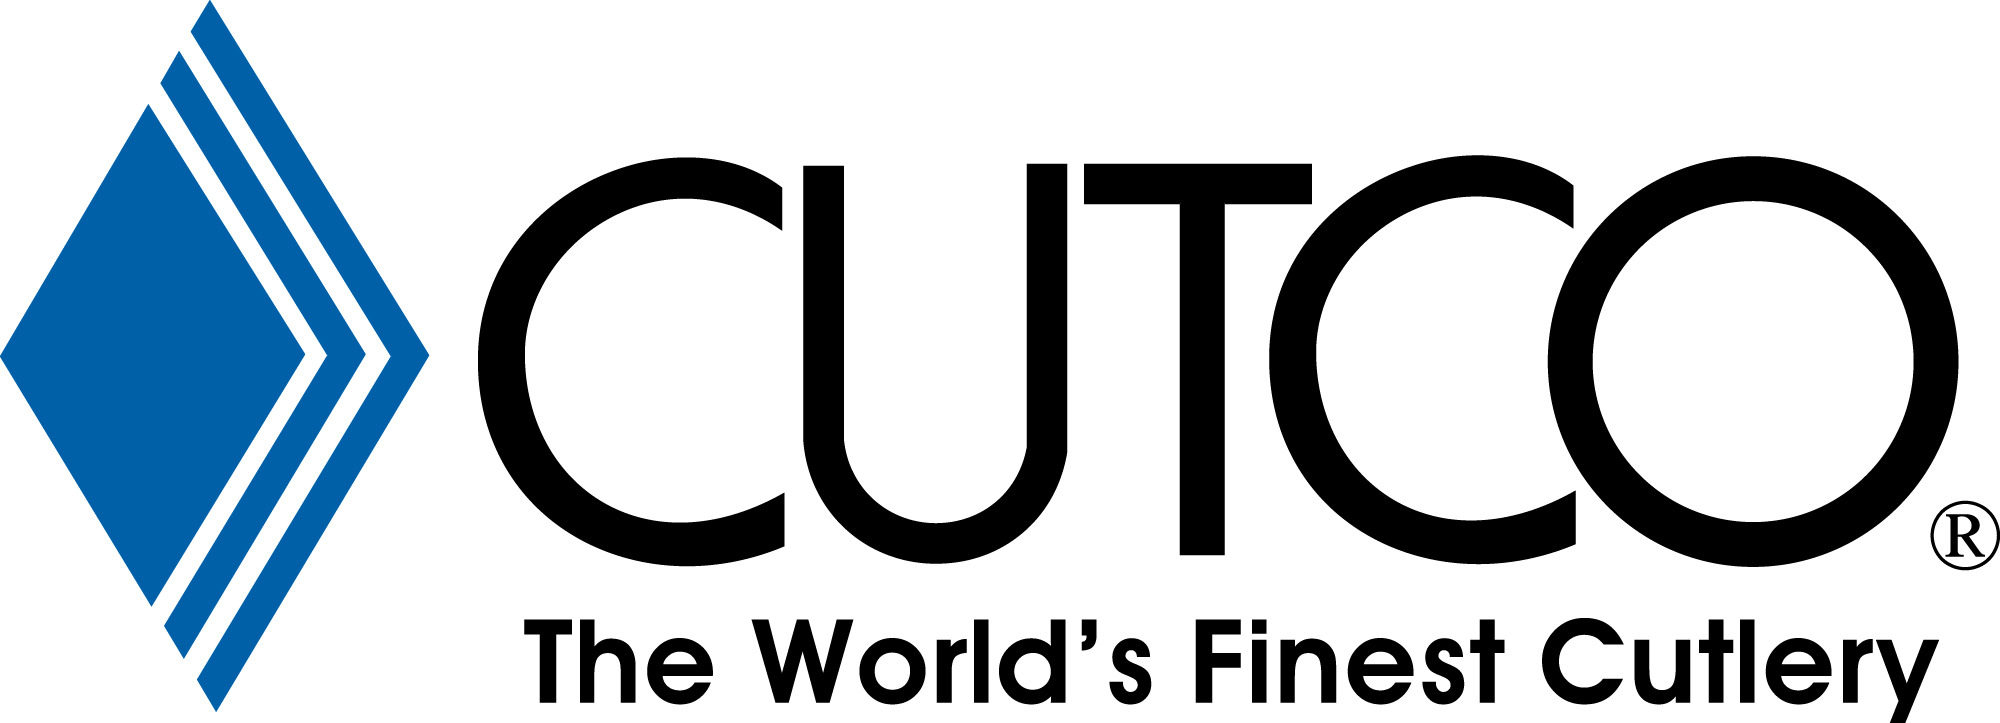 9 Vector CUTCO Cutlery Images